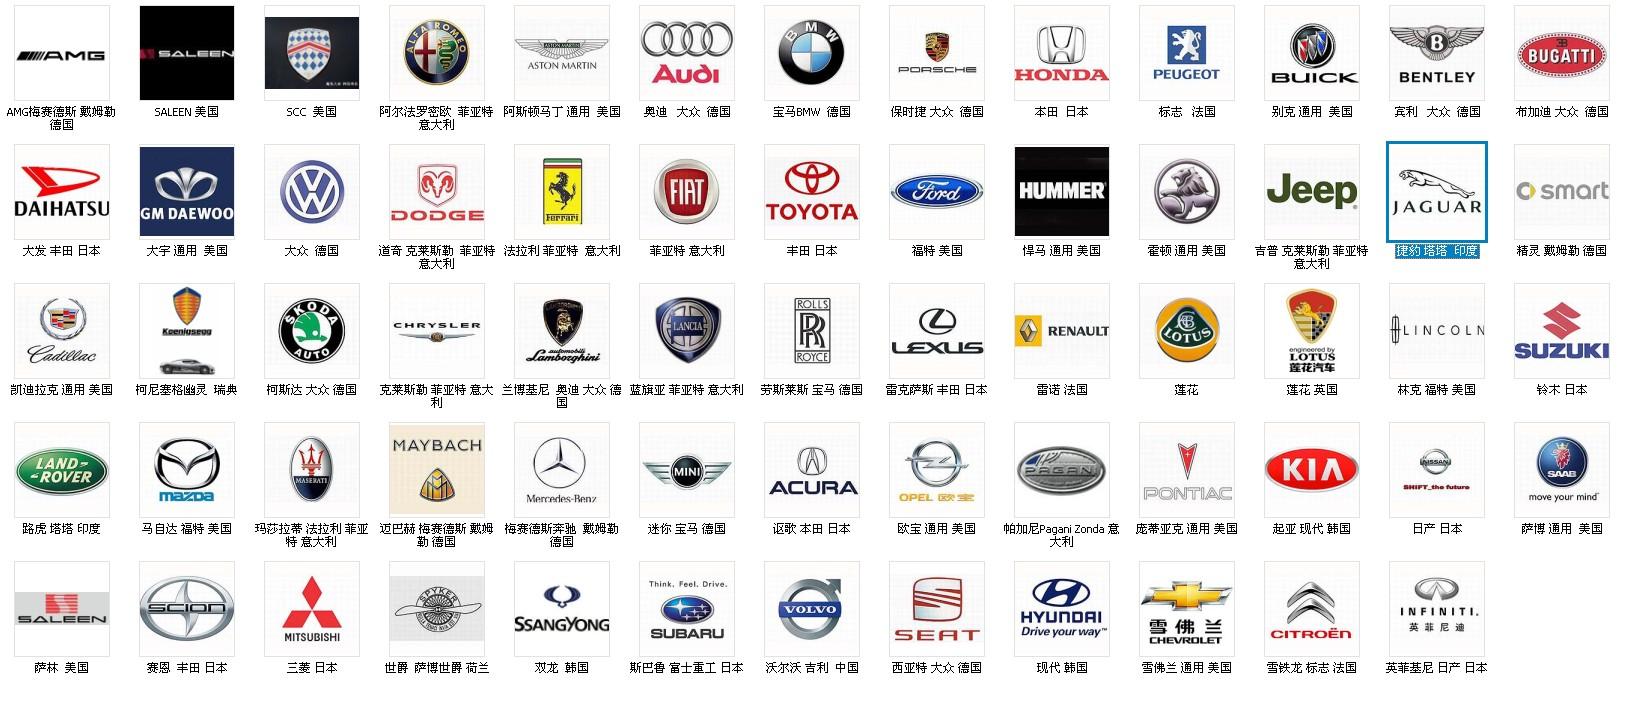 世界各国汽车标志大全 各国汽车品牌大全标志图